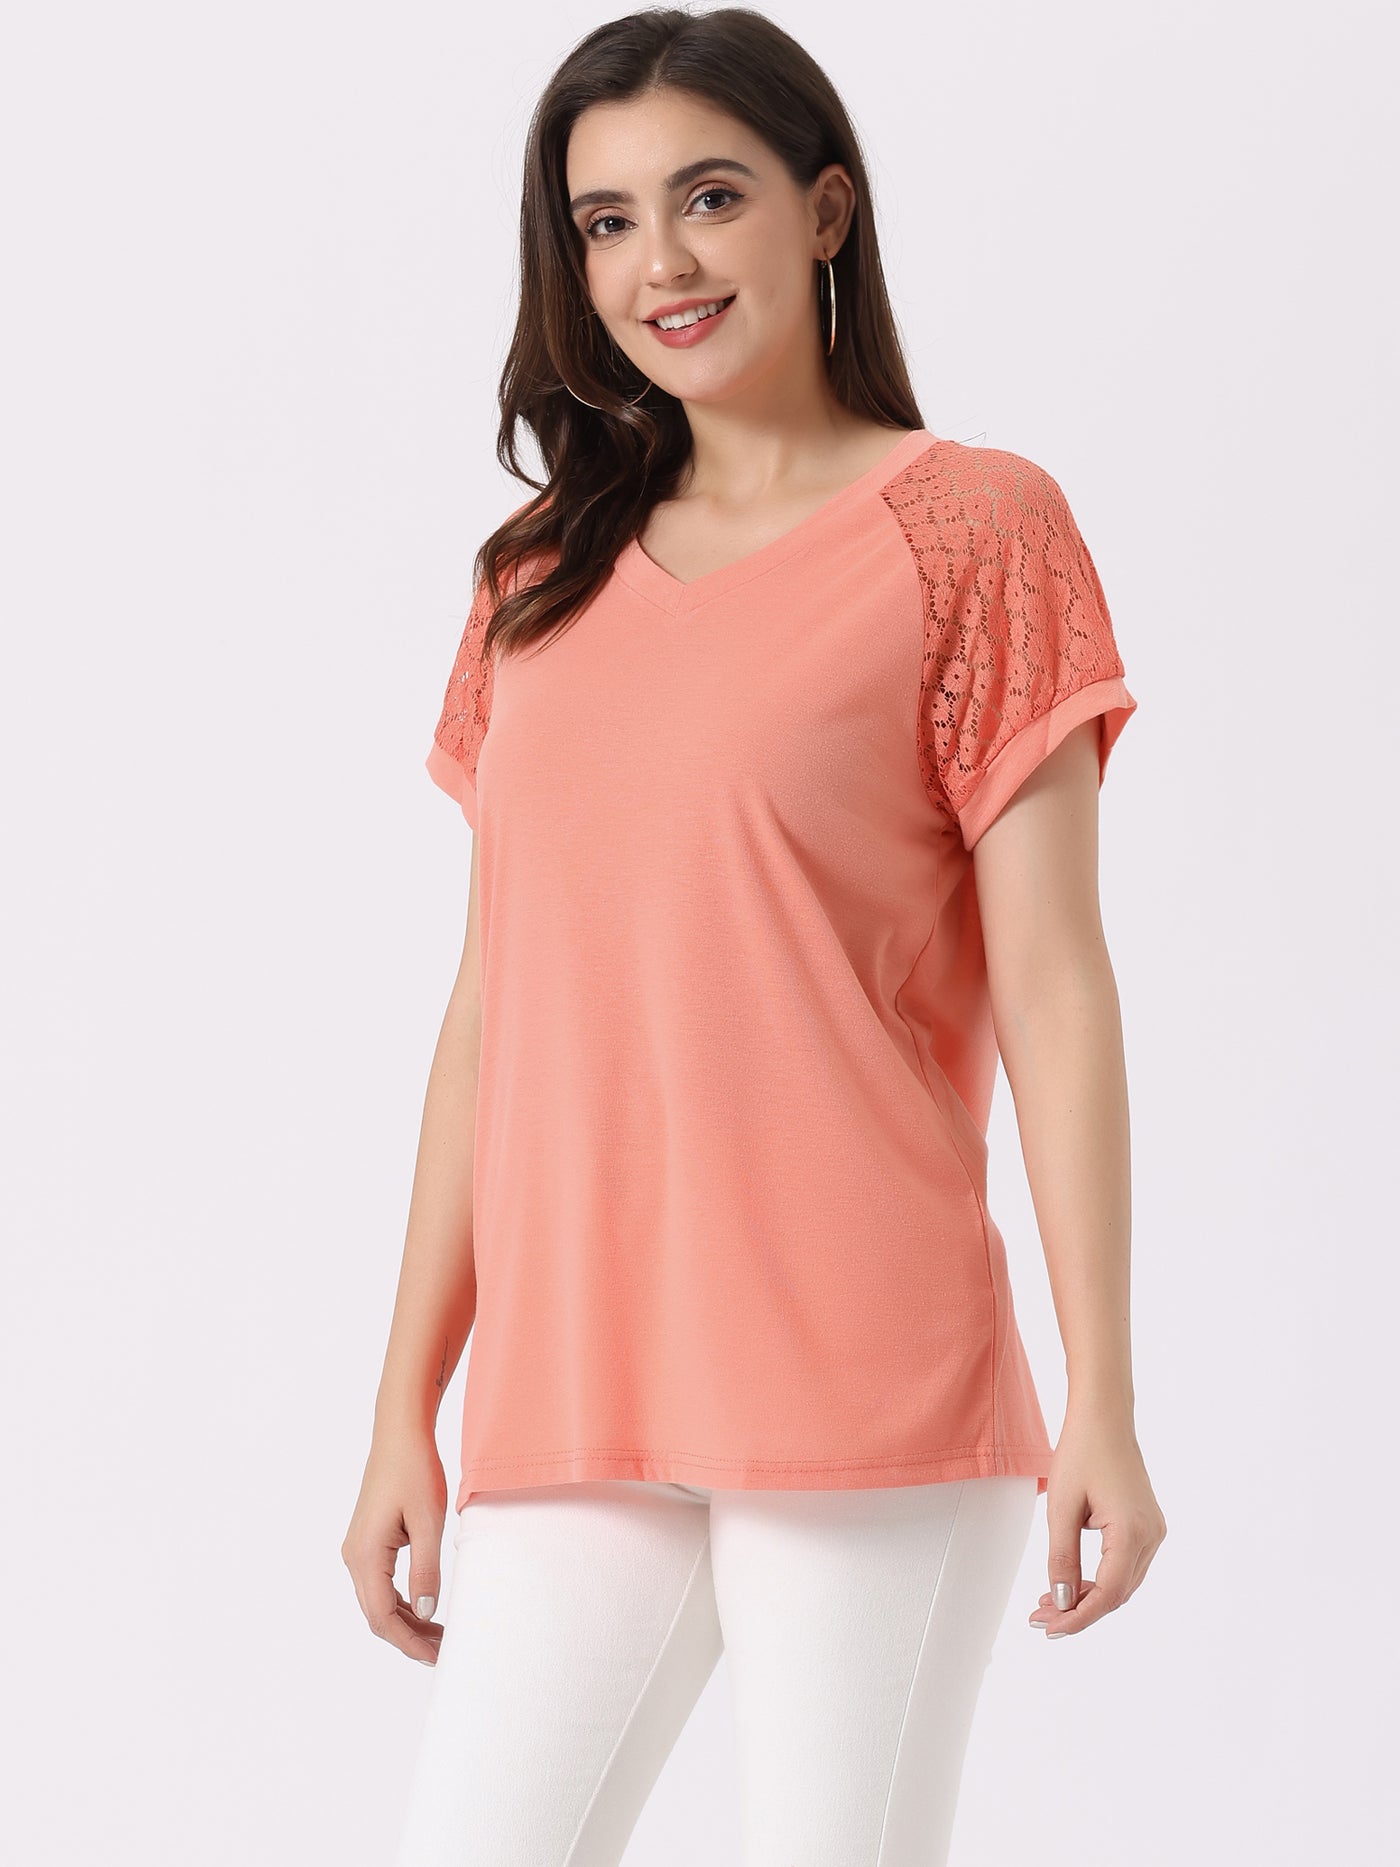 Allegra K Women's Lace Short Sleeves Tops Casual V Neck Basic T-Shirt